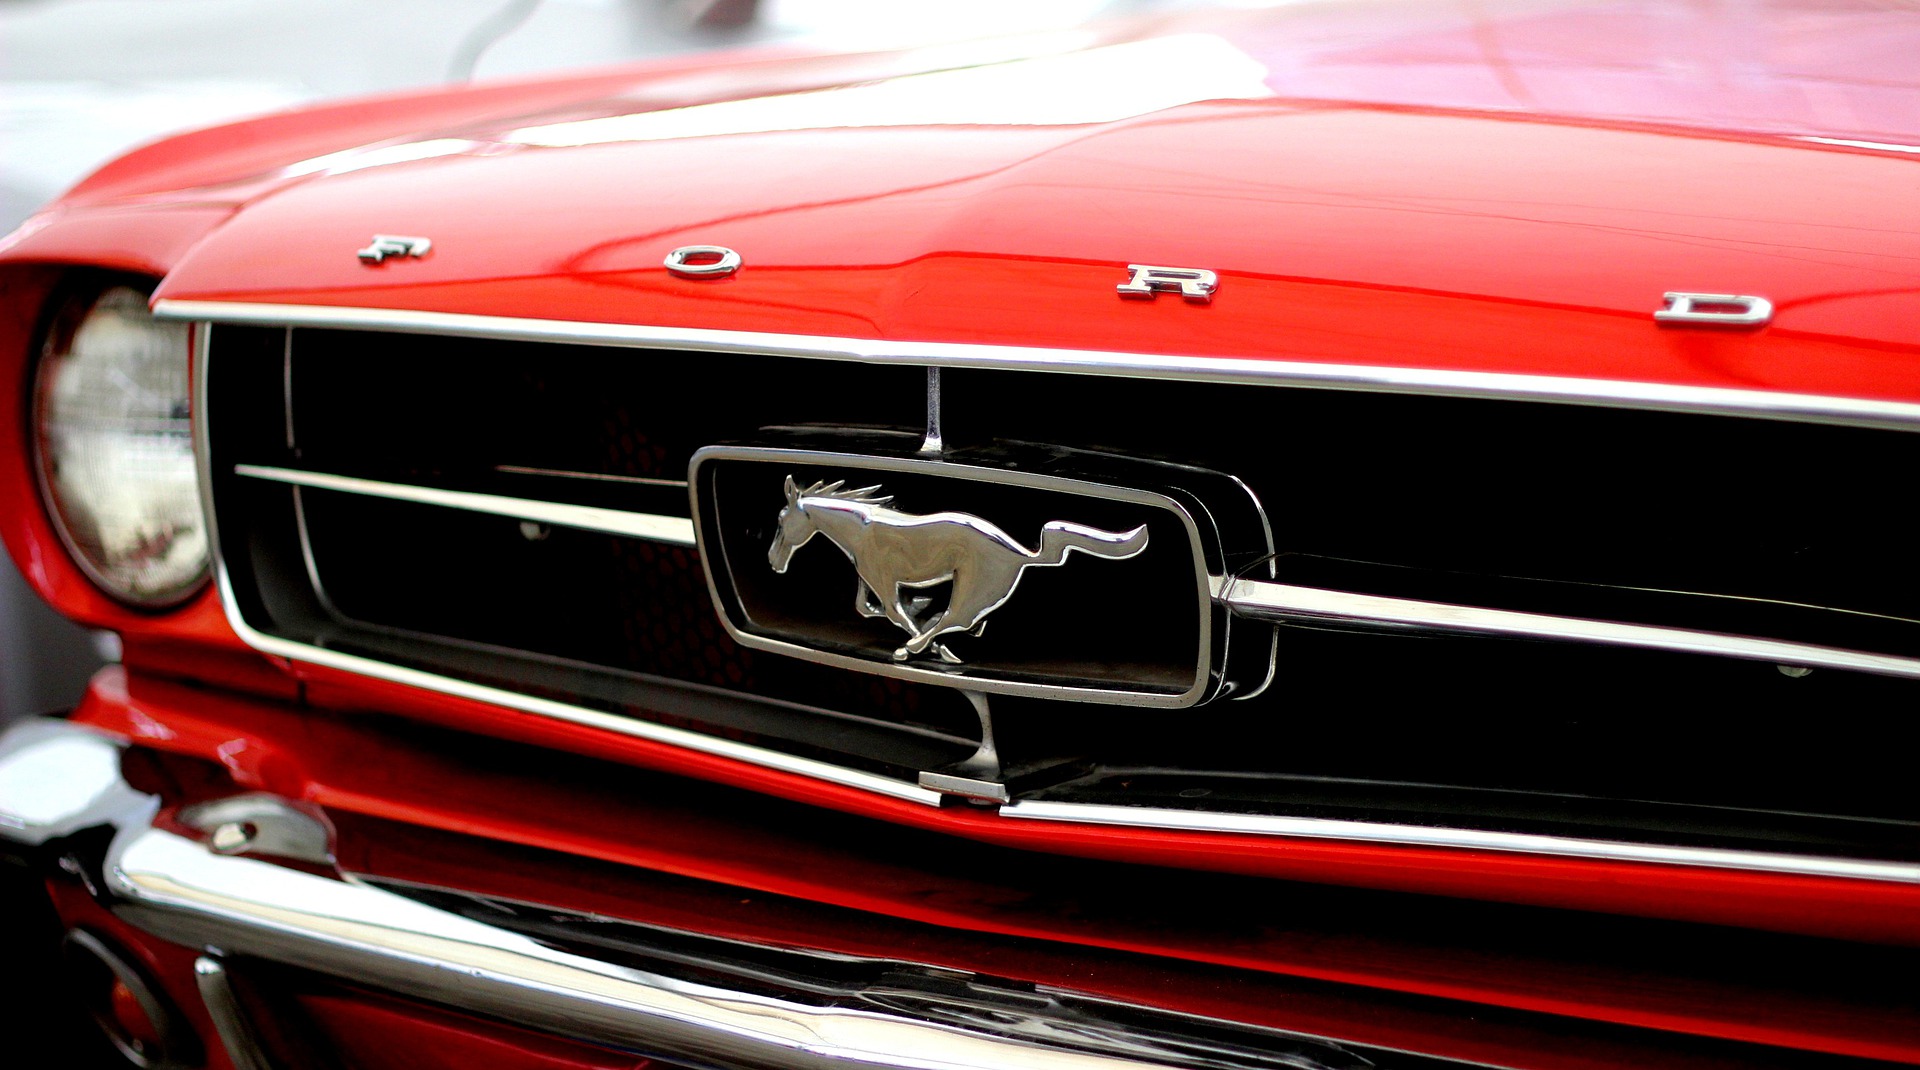 Ford Mustang d'occasion : quelle version choisir (et à quel prix) ?